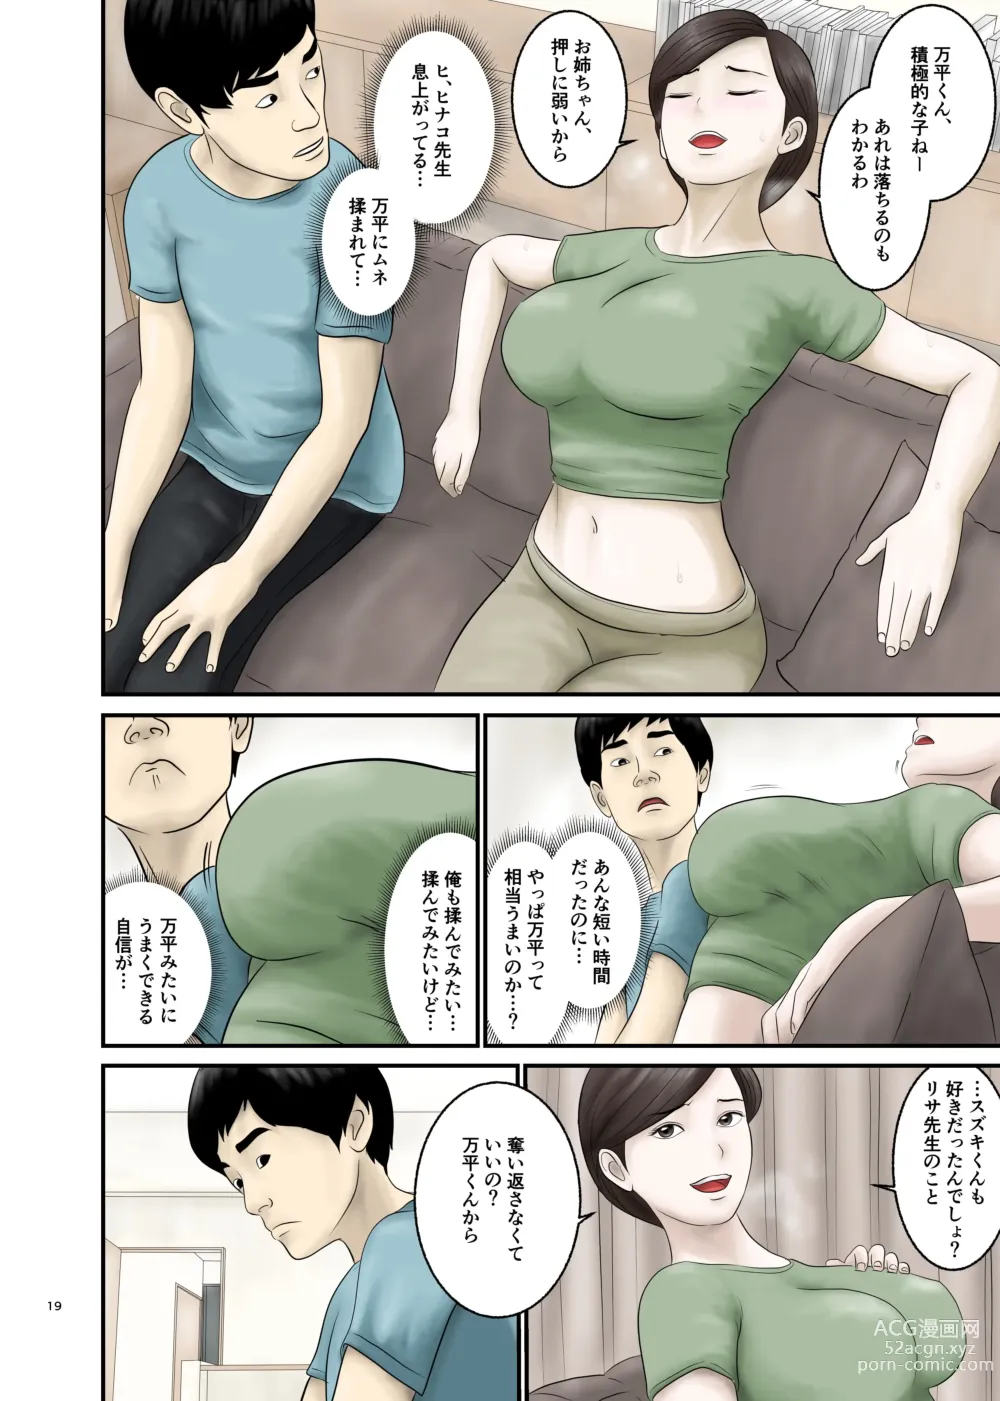 Page 19 of doujinshi Akogare no Hito wa Mou Owari! 2